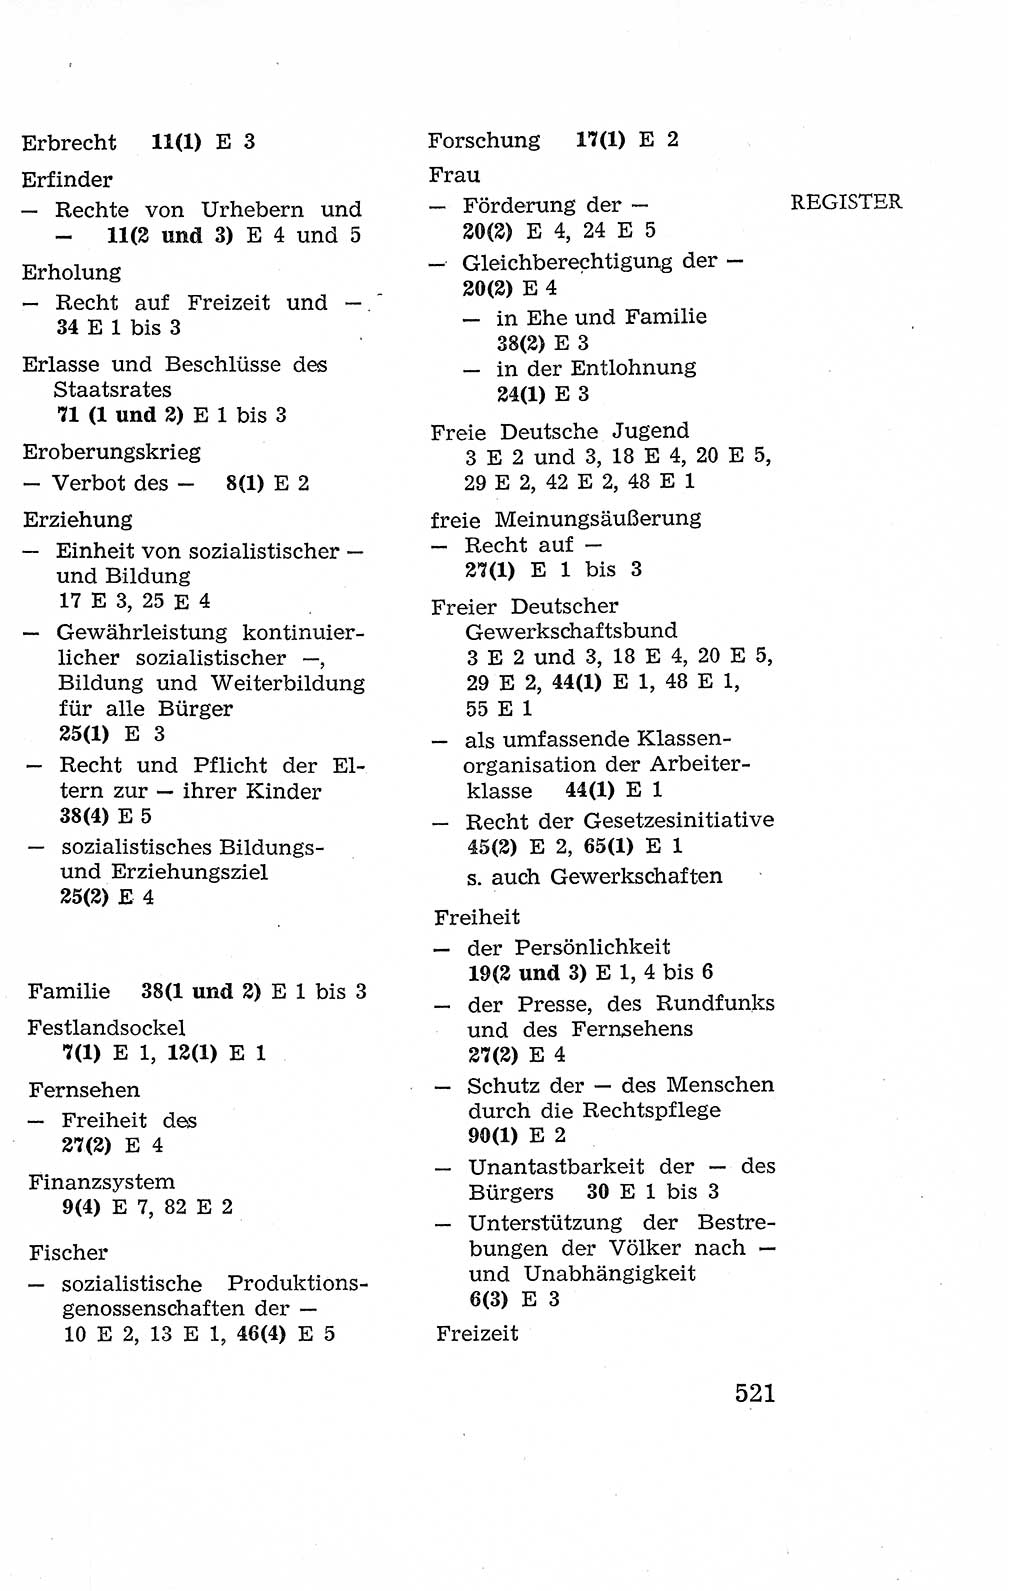 Verfassung der Deutschen Demokratischen Republik (DDR), Dokumente, Kommentar 1969, Band 2, Seite 521 (Verf. DDR Dok. Komm. 1969, Bd. 2, S. 521)